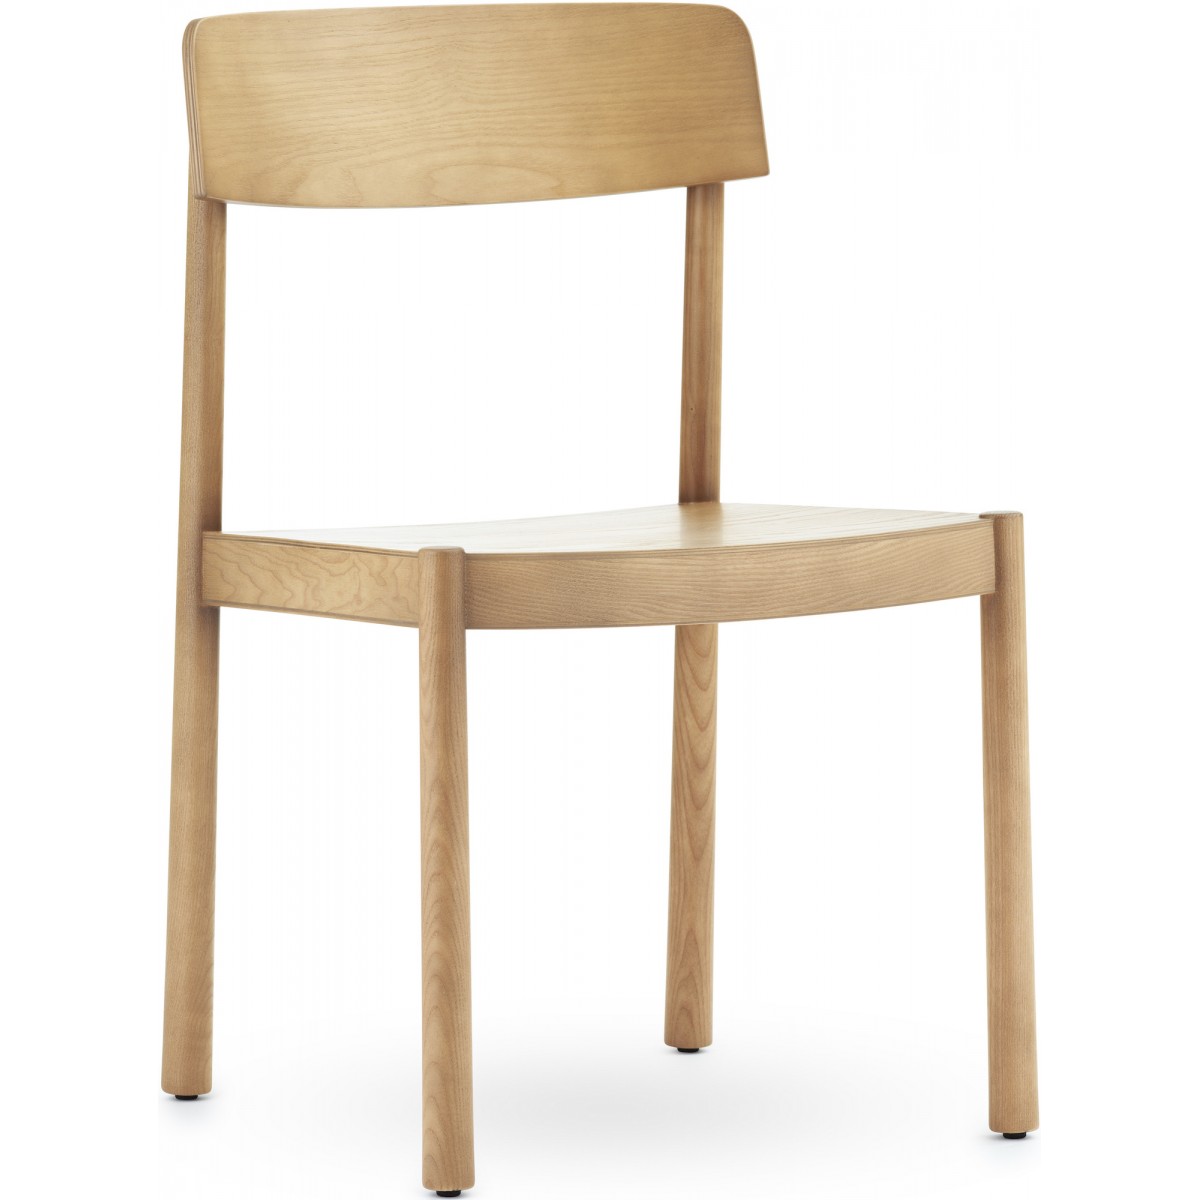 Ash – Timb Chair